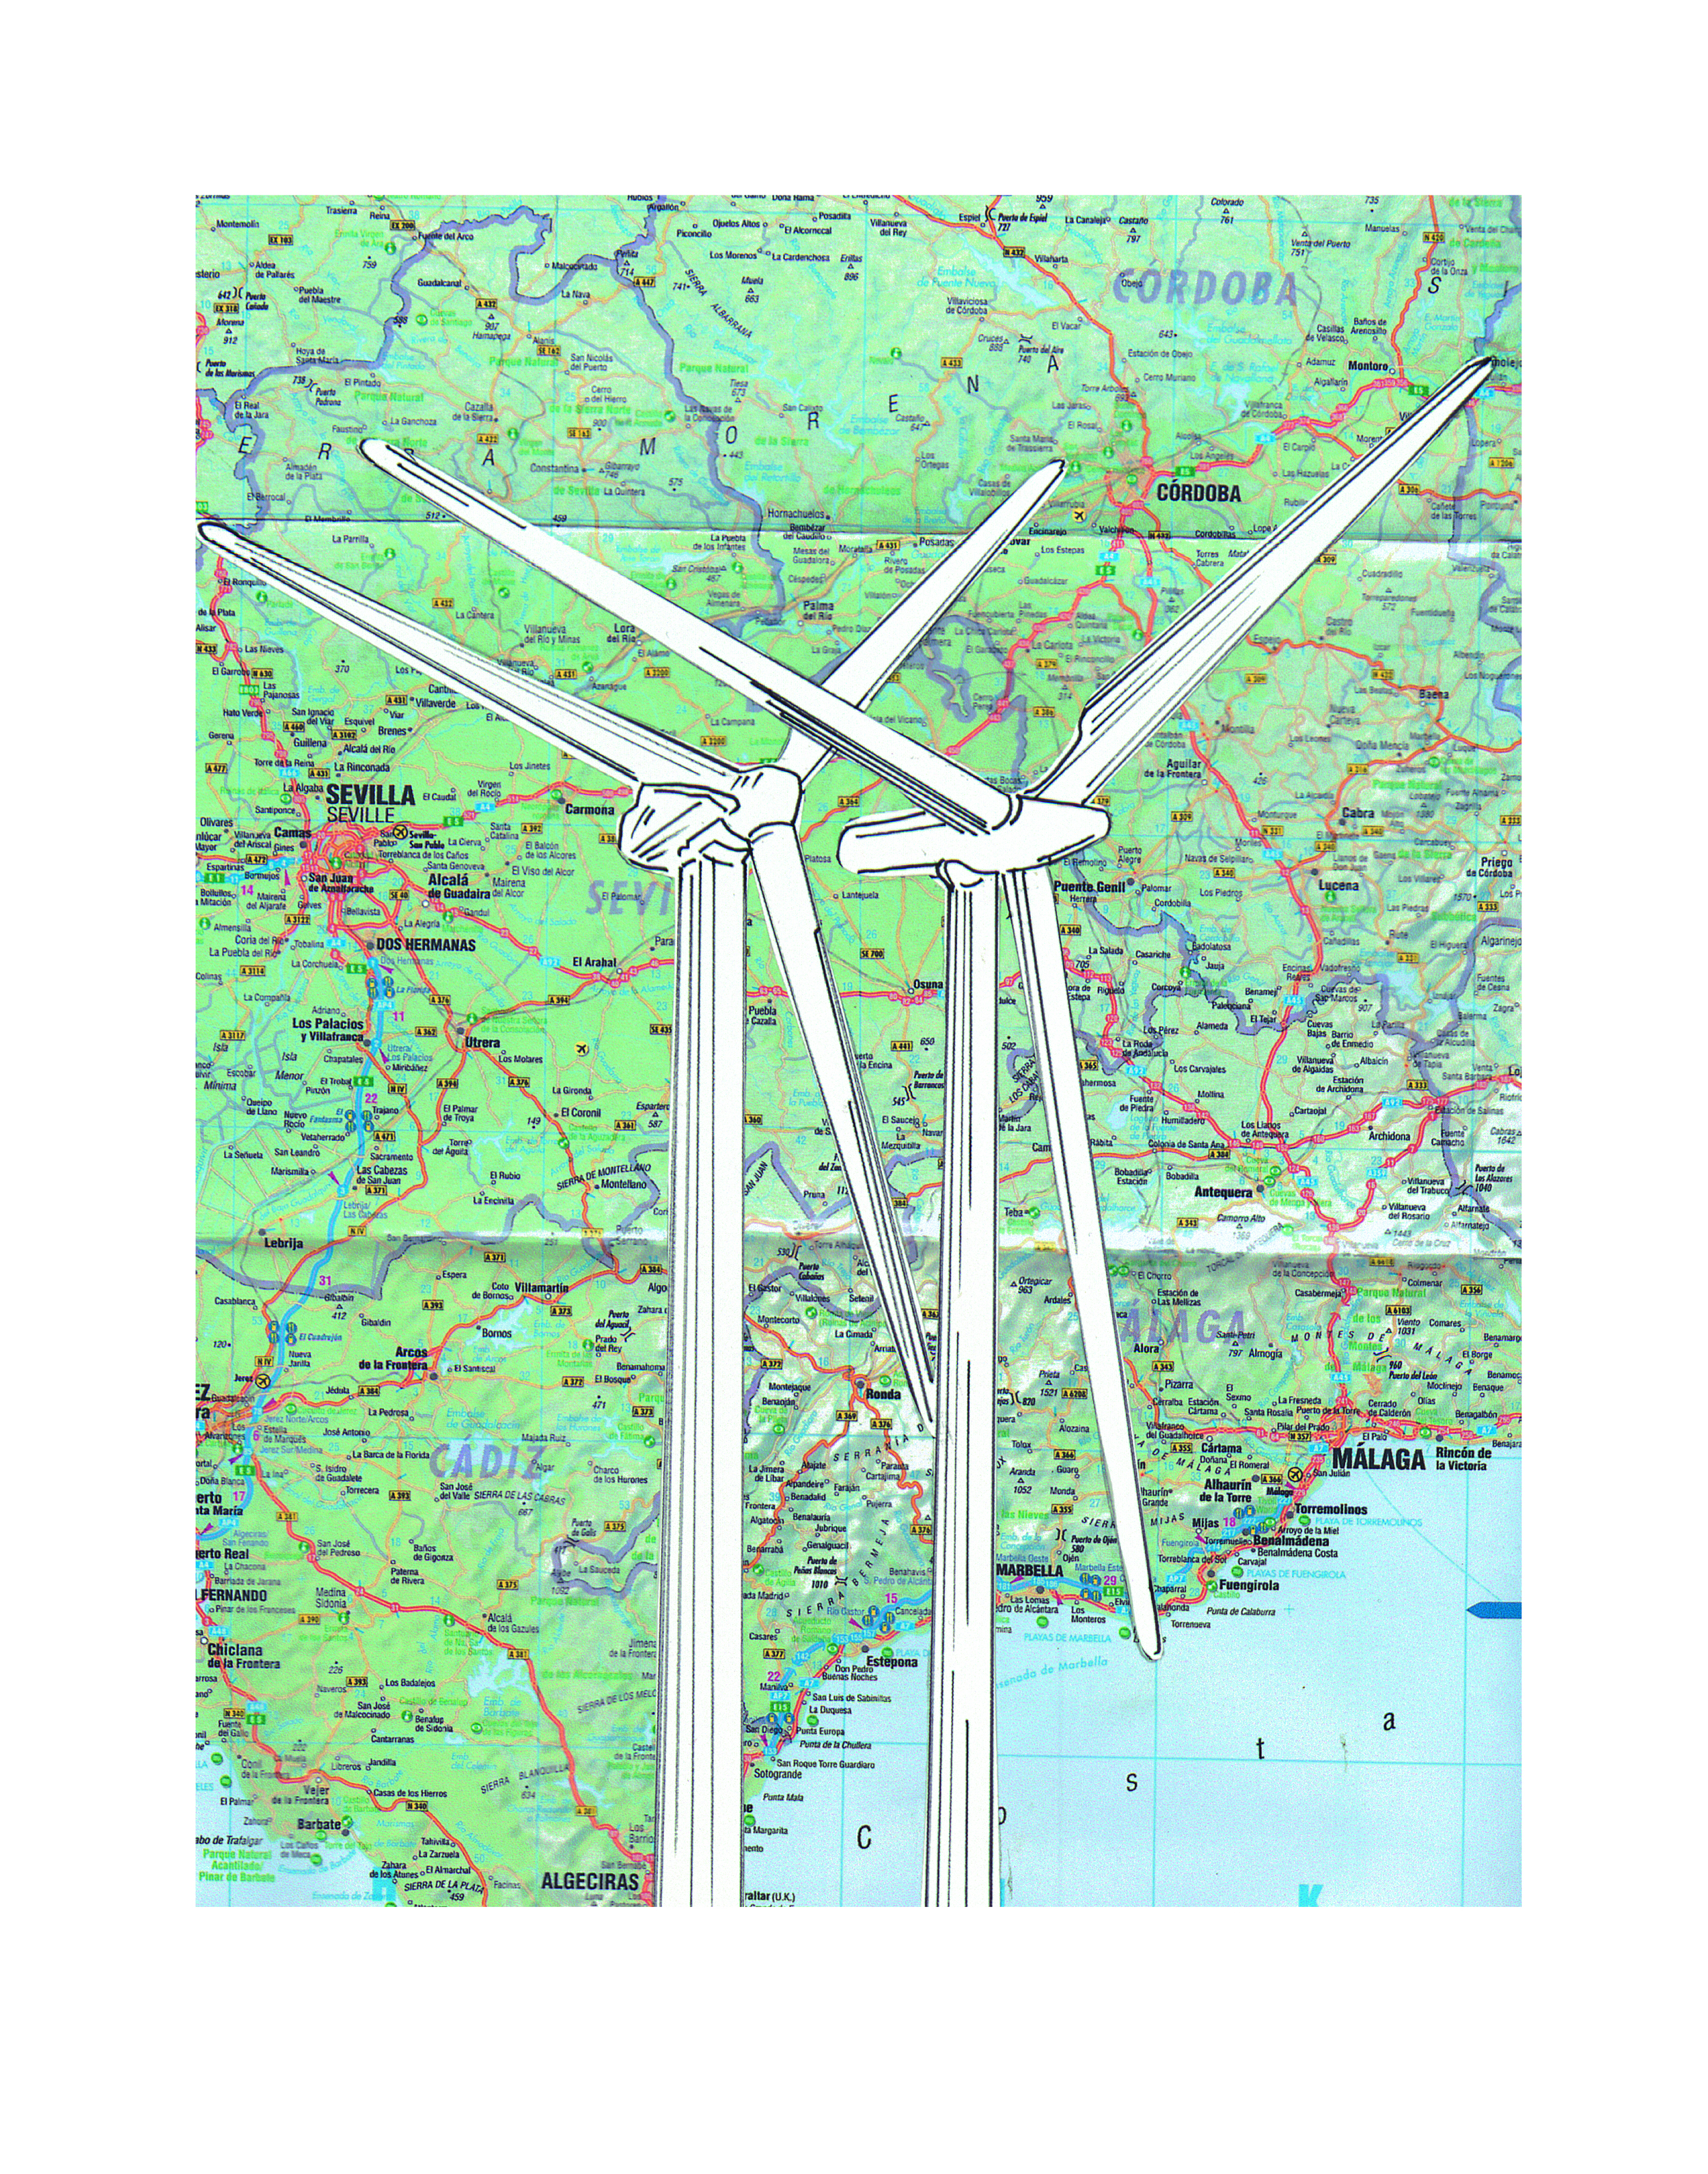 SARR_Windmills_Print.jpg